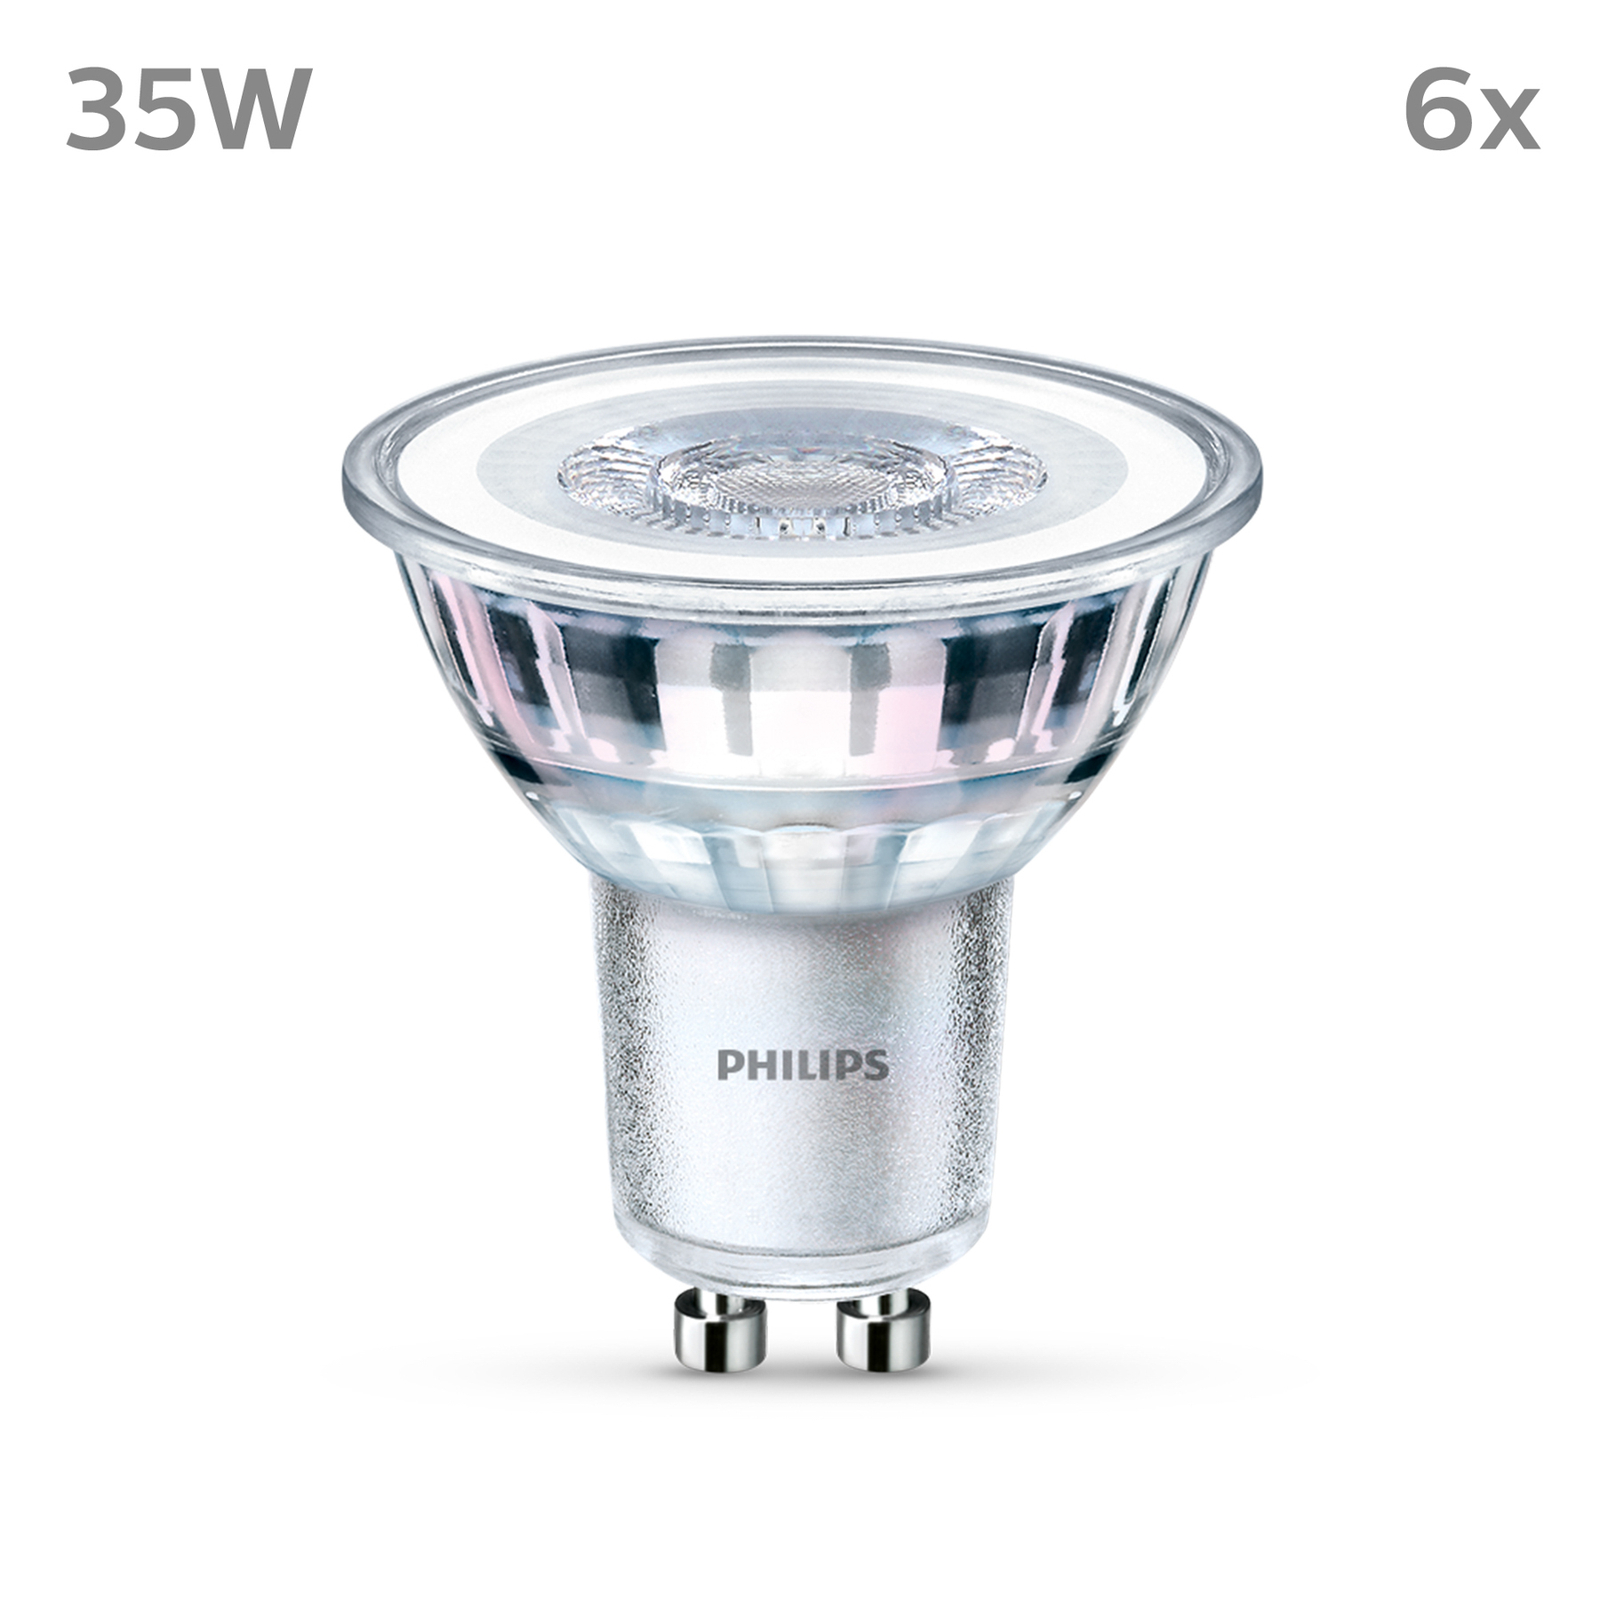 Philips bec LED GU10 3,5W 275lm 840 transp 36° 6x